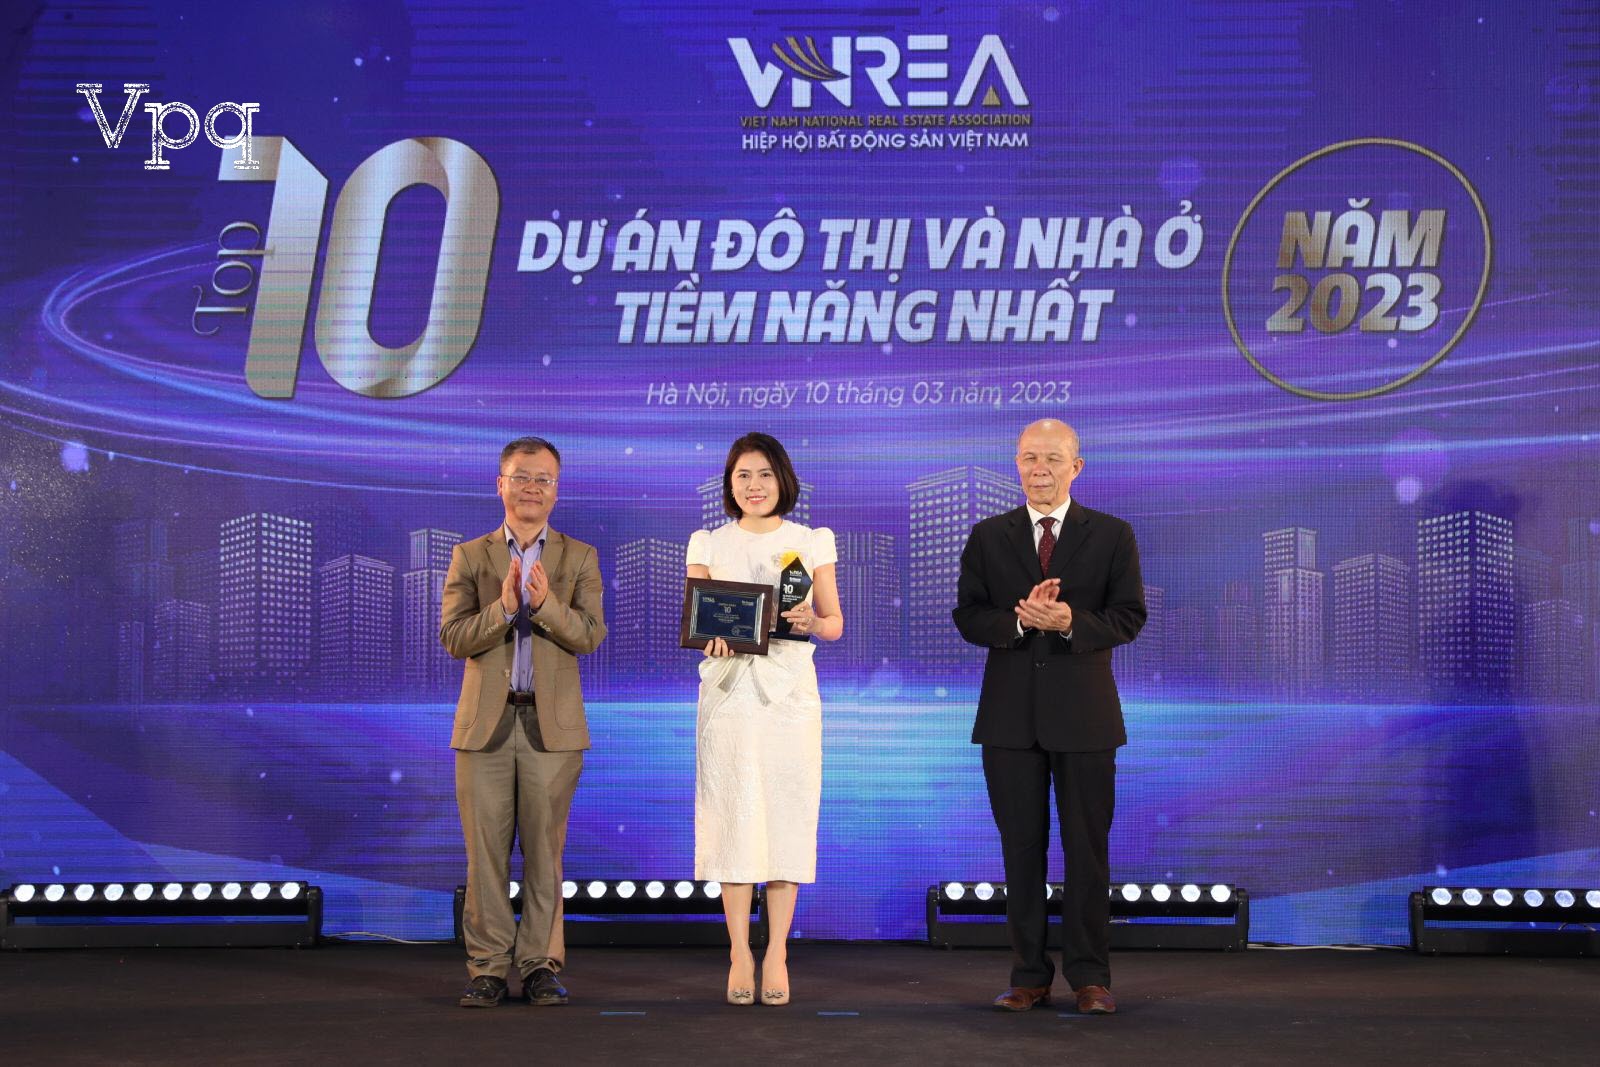 Bà Trịnh Kim Ngần - Giám đốc Kinh doanh Sun Property lên nhận giải top 10 dự án đô thị và nhà ở tiềm năng nhất năm 2023.